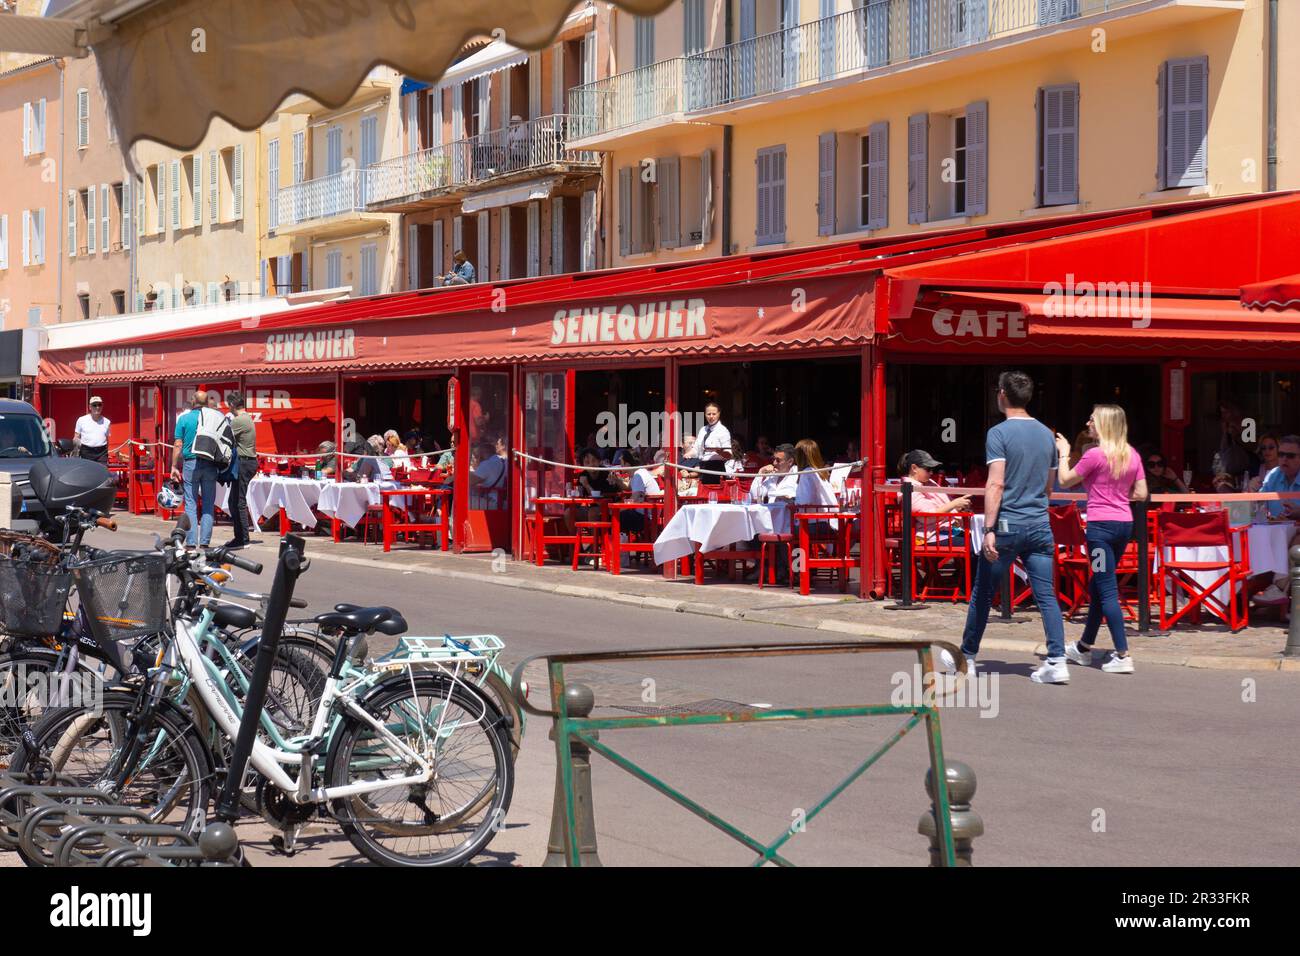 Das Senequier Café am Hafen ist bei Touristen in St. Tropez, Frankreich, beliebt. Ein schickes Café eines Pariser Restaurantbetreibers zieht Yachtbesitzer und Touristen an. Stockfoto